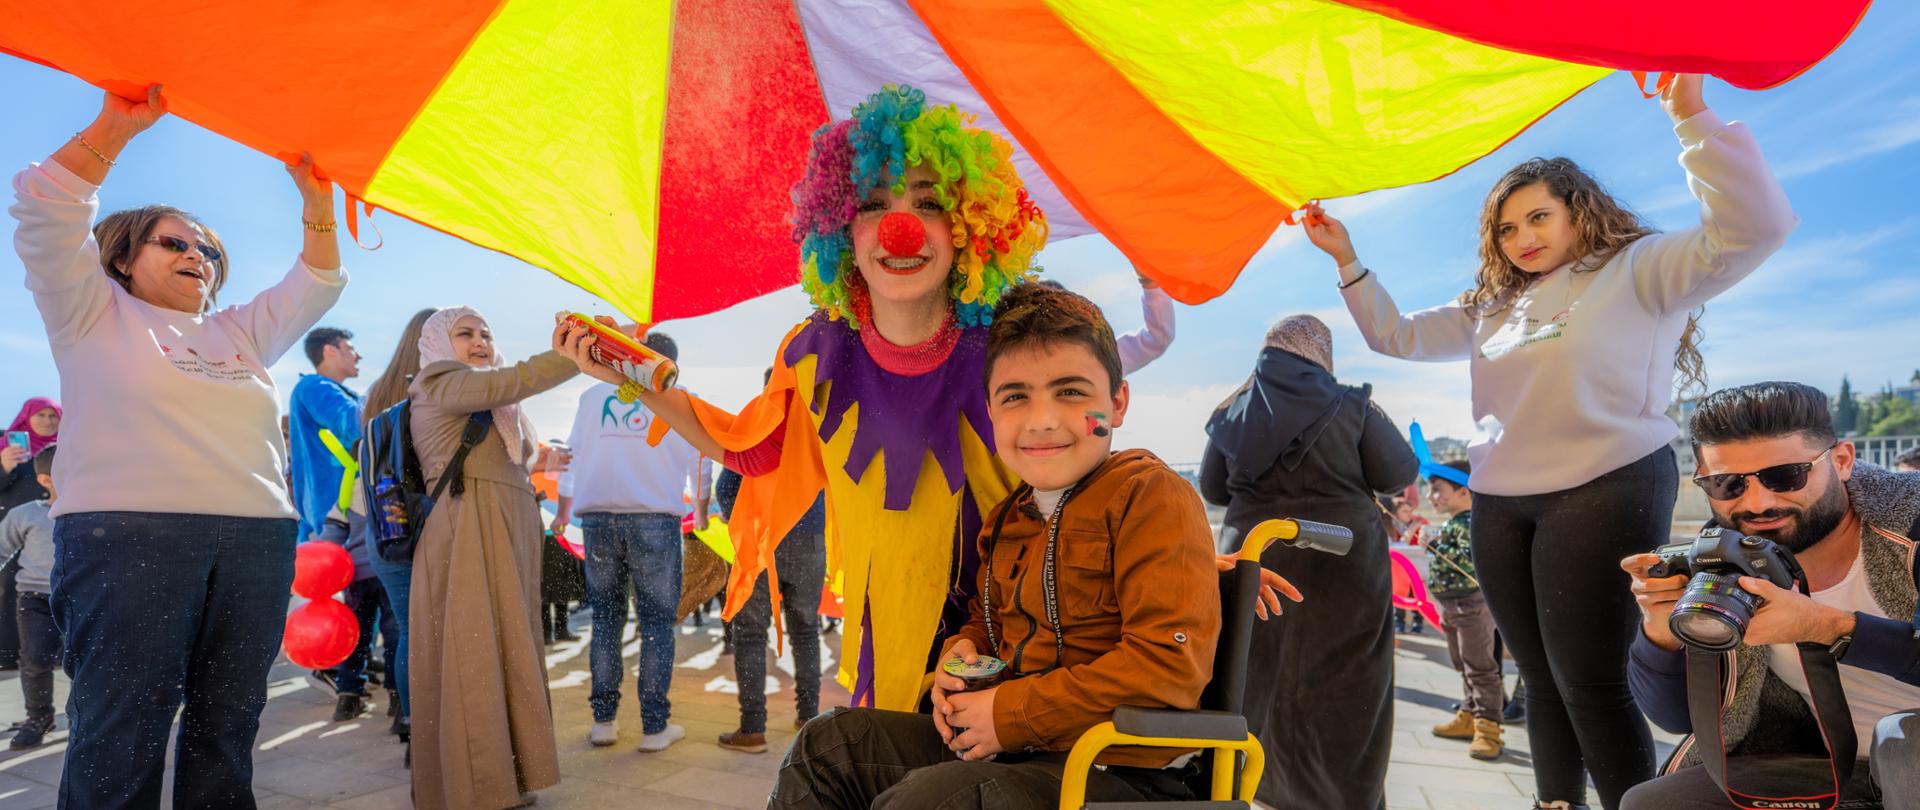 Uśmiechnięty chłopiec na wózku inwalidzkim z namalowaną flagą Palestyny na policzku. Obok niech uśmiechnięty kolorowy klałn. Wokół nich śmiejący się ludzie. 